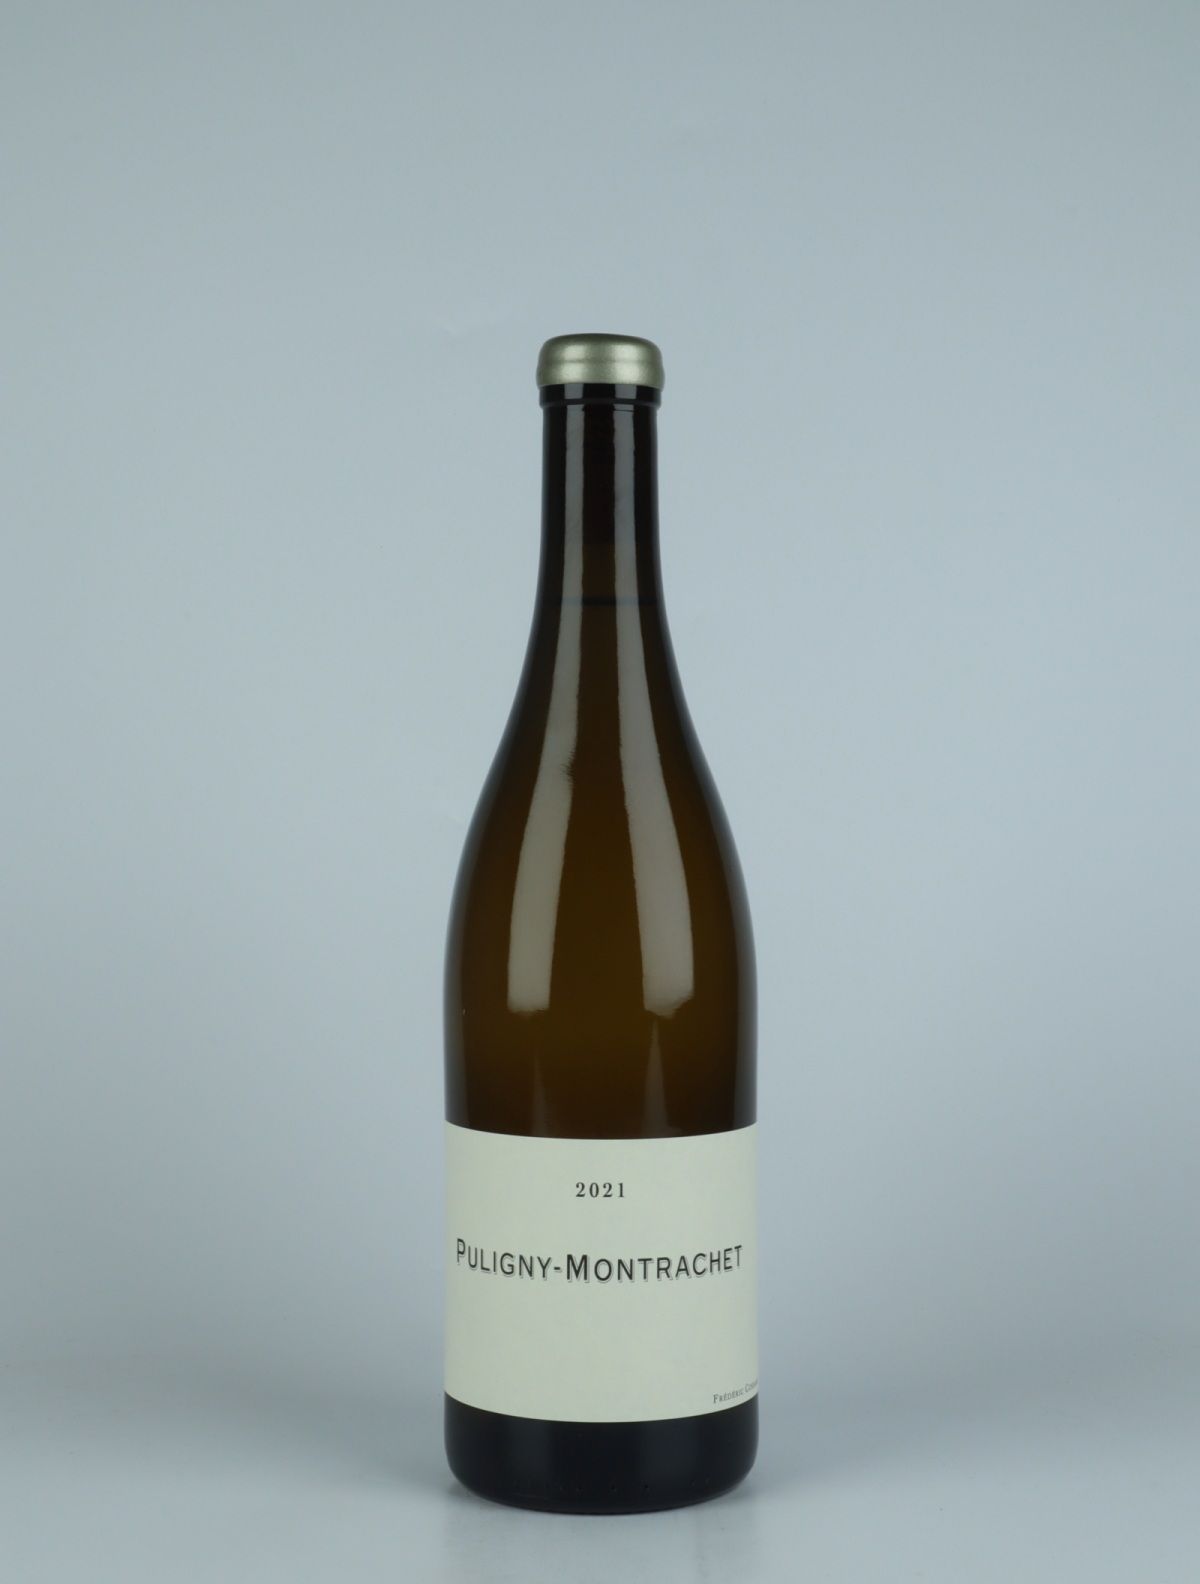 En flaske 2021 Puligny Montrachet Hvidvin fra Frédéric Cossard, Bourgogne i Frankrig